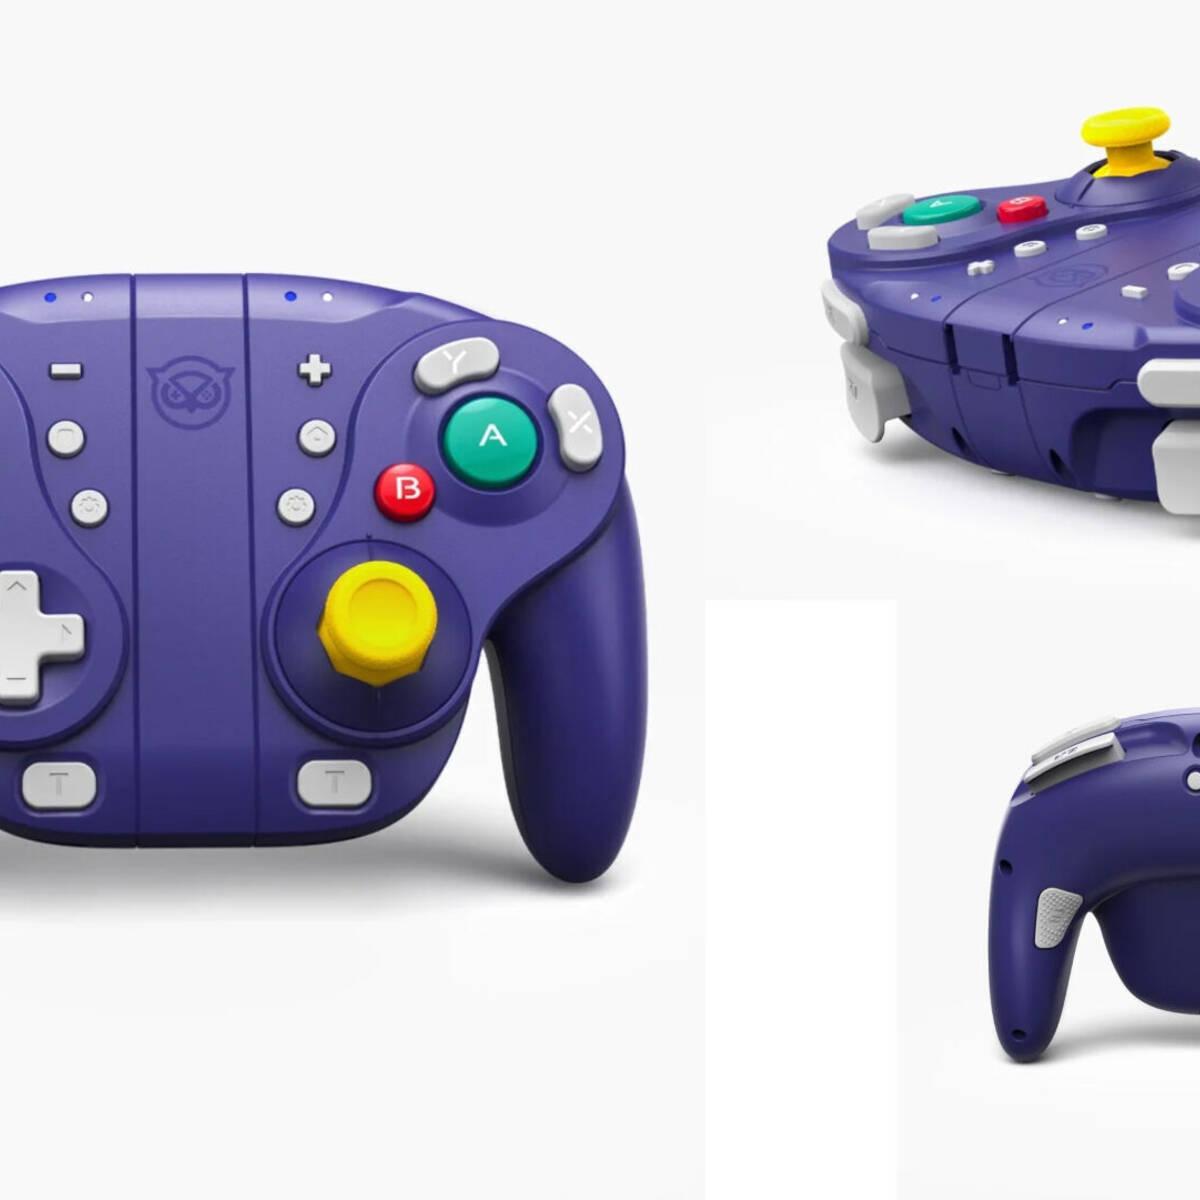 Así es este nuevo mando para Nintendo Switch inspirado en el de GameCube -  Vandal